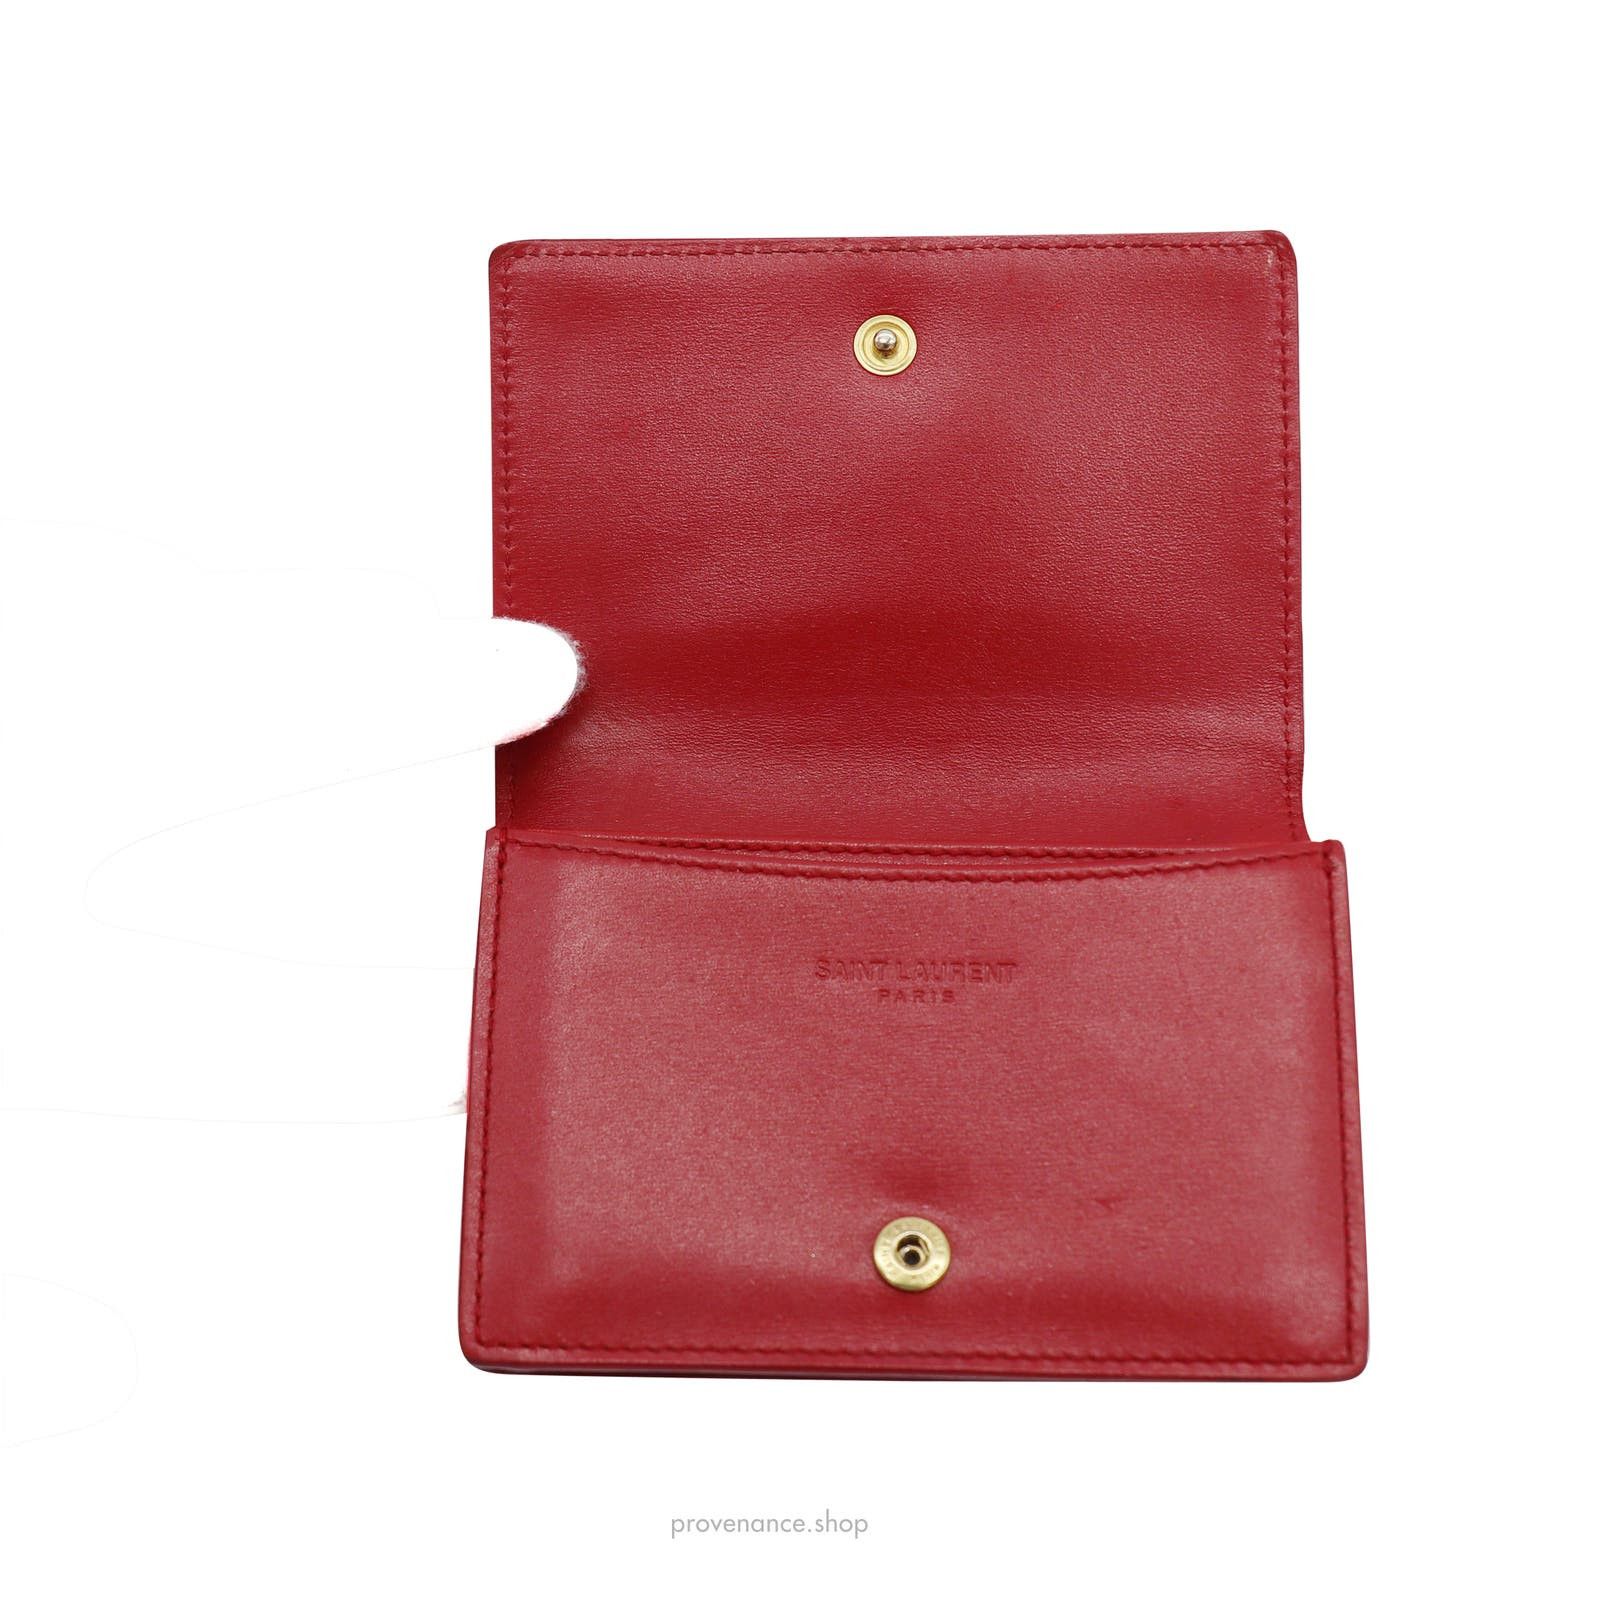 Saint Laurent Paris 🔴 Saint Laurent Paris SLP Card Holder - Poppy Red Leather Size ONE SIZE - 5 Thumbnail